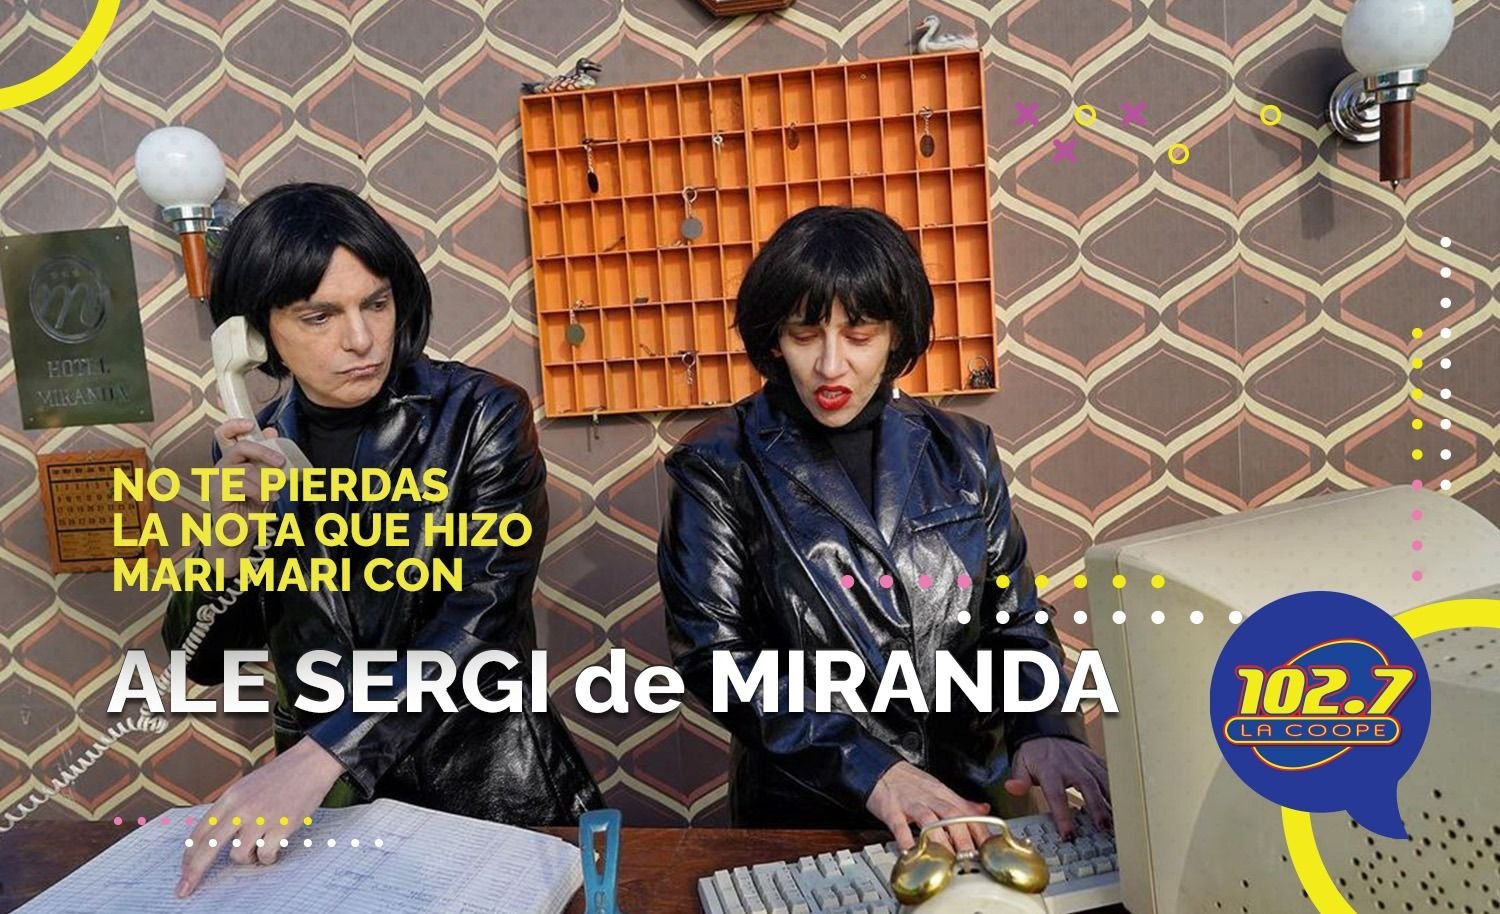 ENTREVISTA: MIRANDA: "El 29 nos sacamos las ganas con el show en Mendoza"